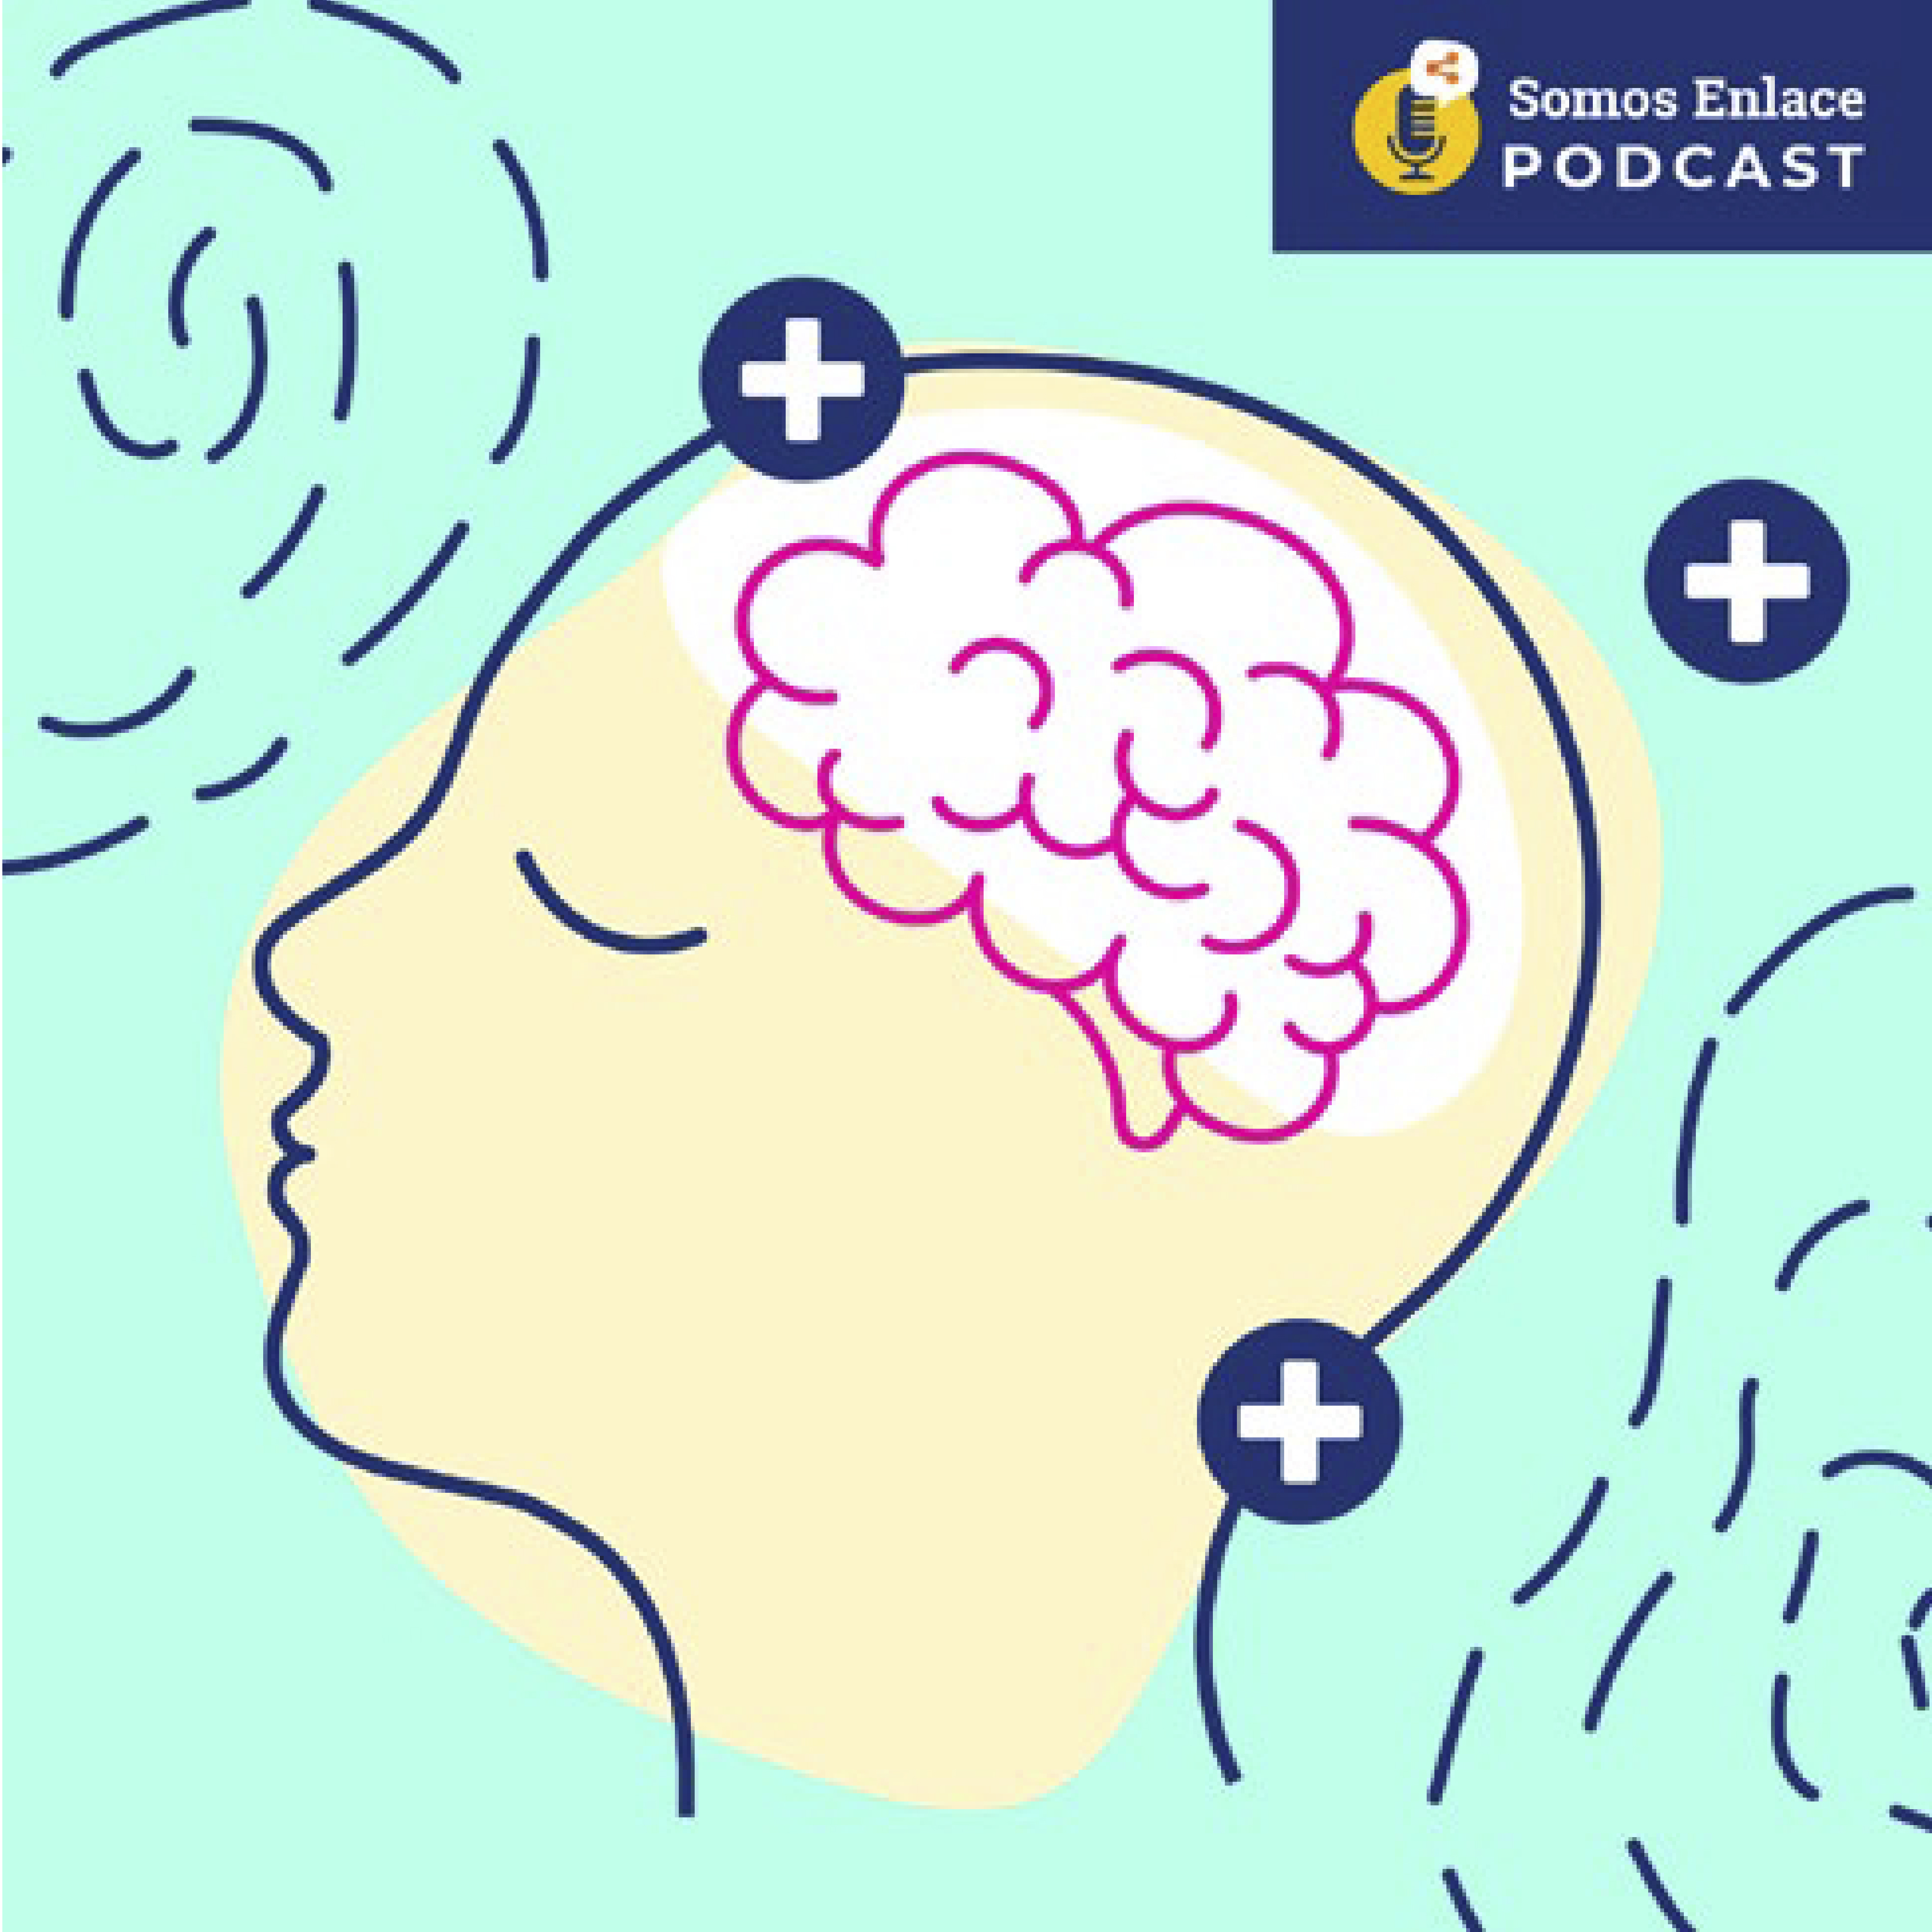 Salud Mental en pandemia: Sensación Estéreo – Somos Enlace Podcast